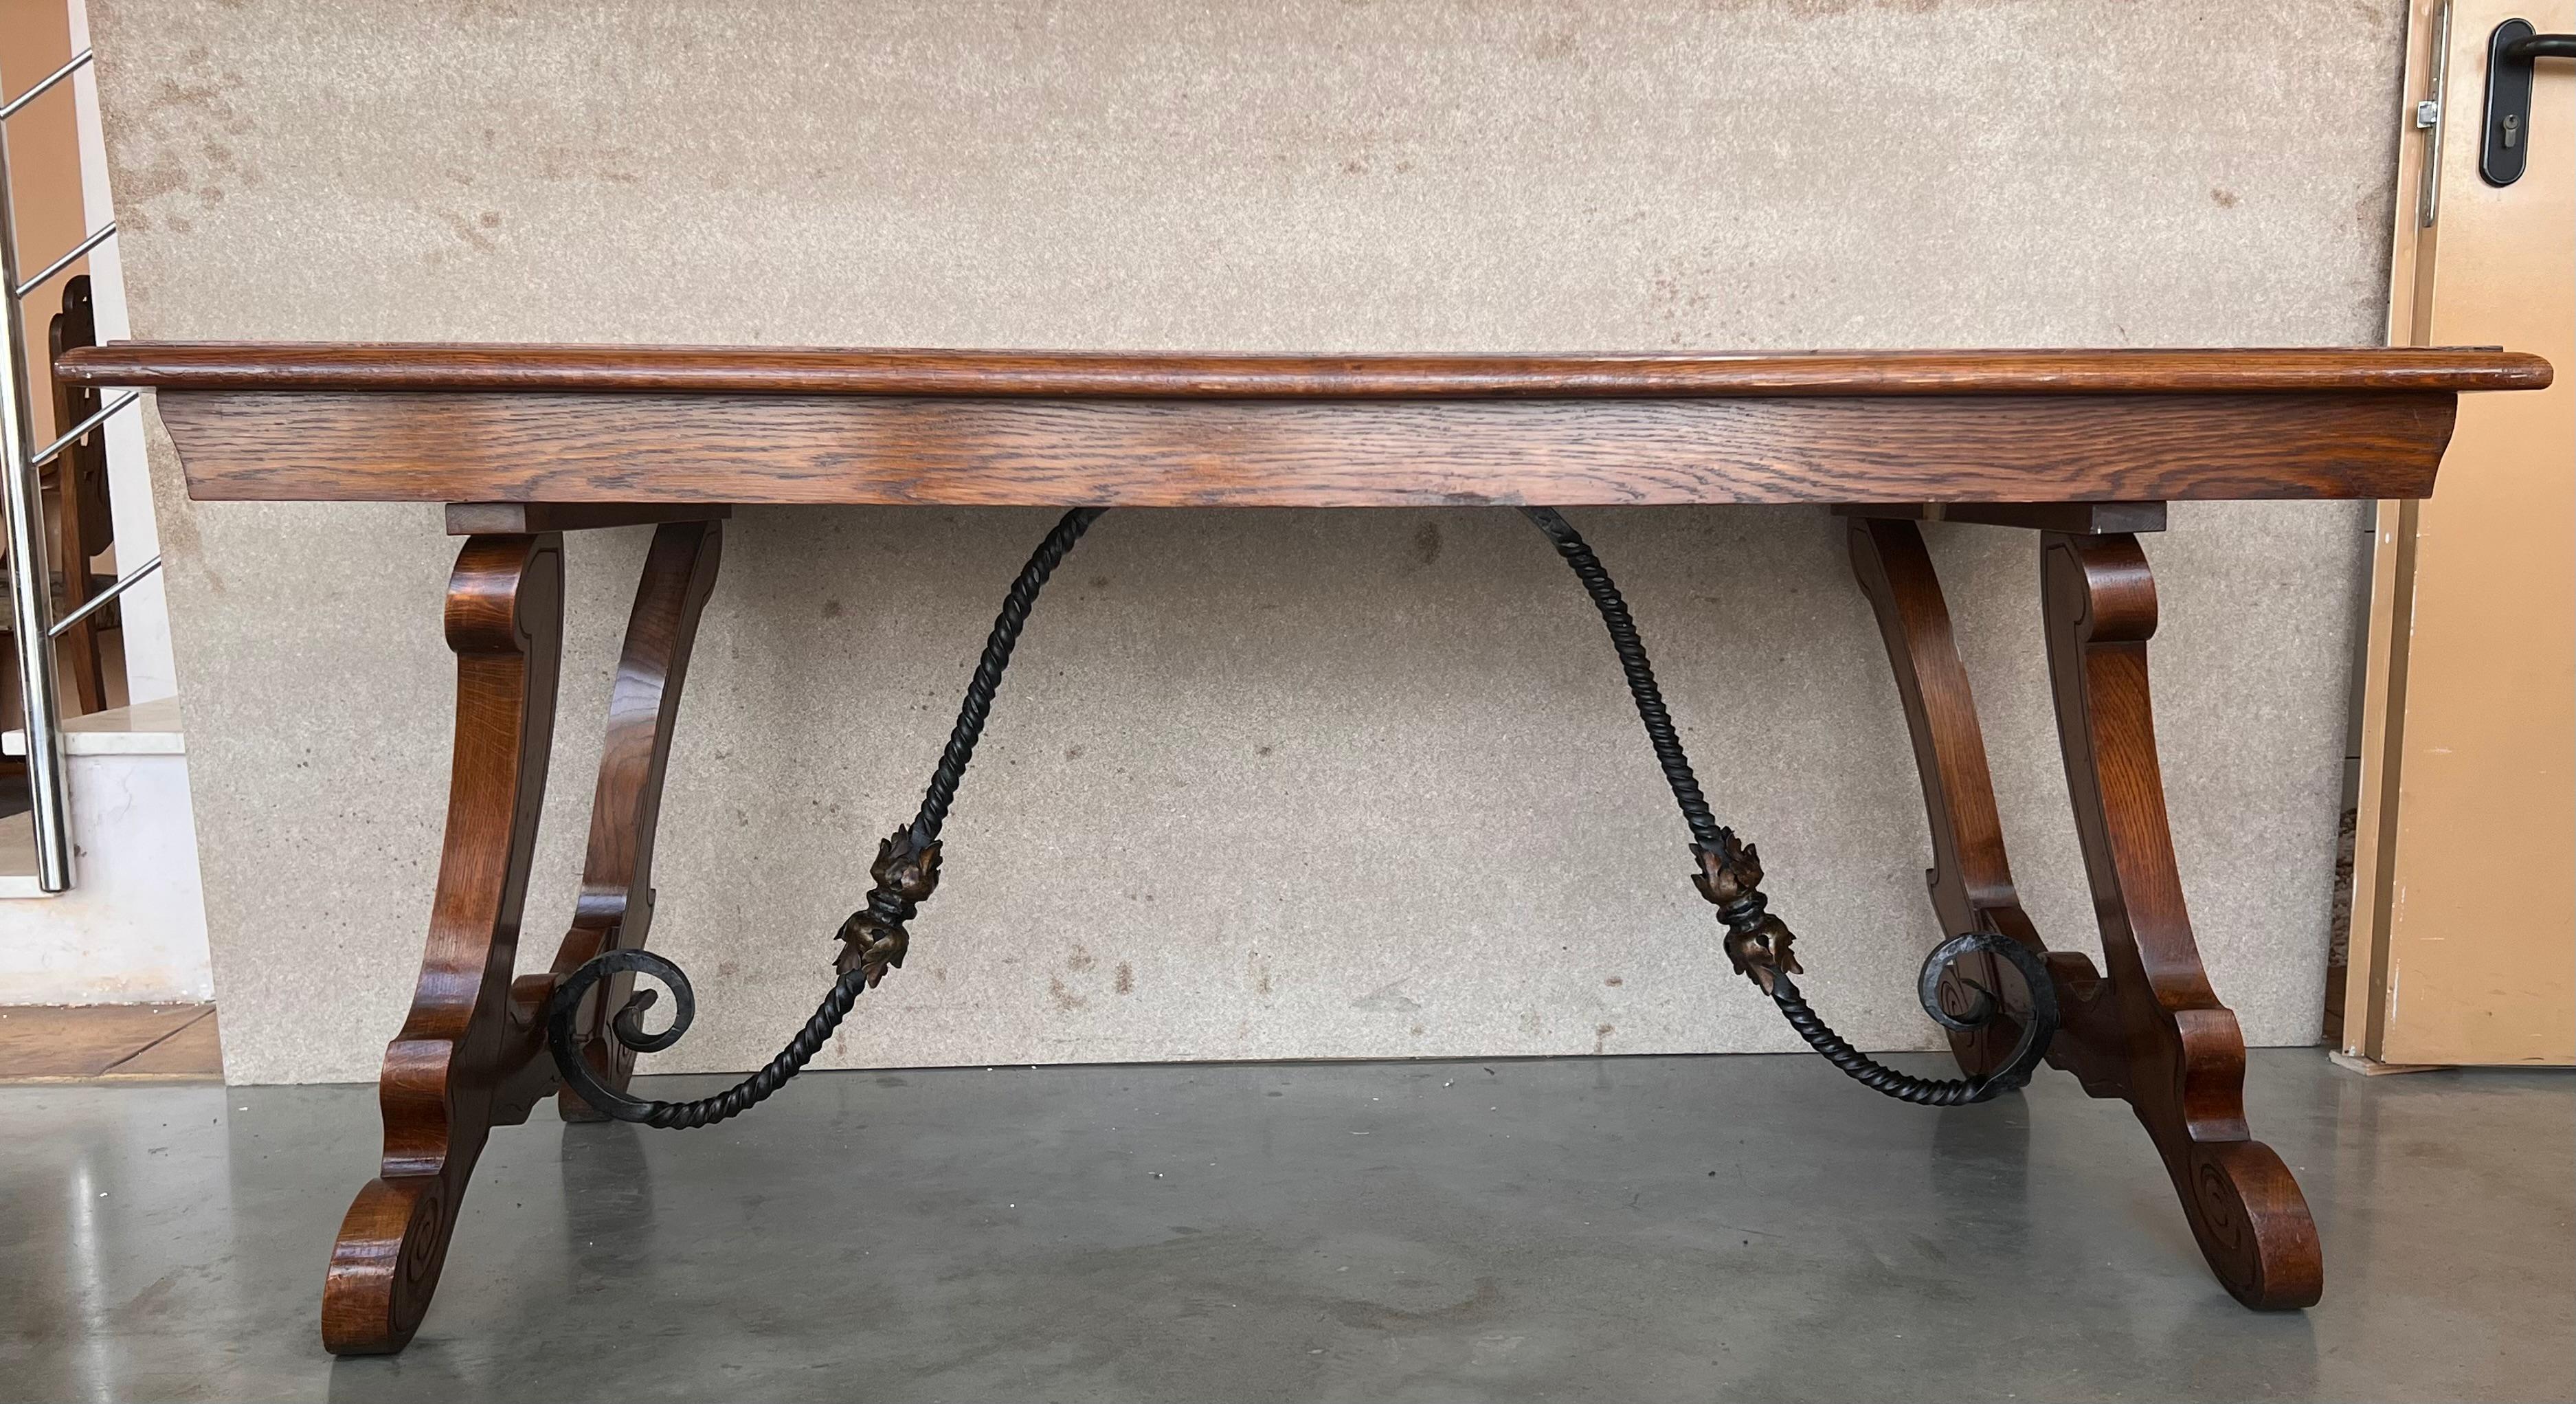 Table à tréteaux espagnole monumentale du 20e siècle, avec un plateau rectangulaire en noyer massif, reposant sur des pieds lyre classiques sculptés à la main et reliés par de magnifiques brancards en fer.

Cette table a été conçue pour une grande